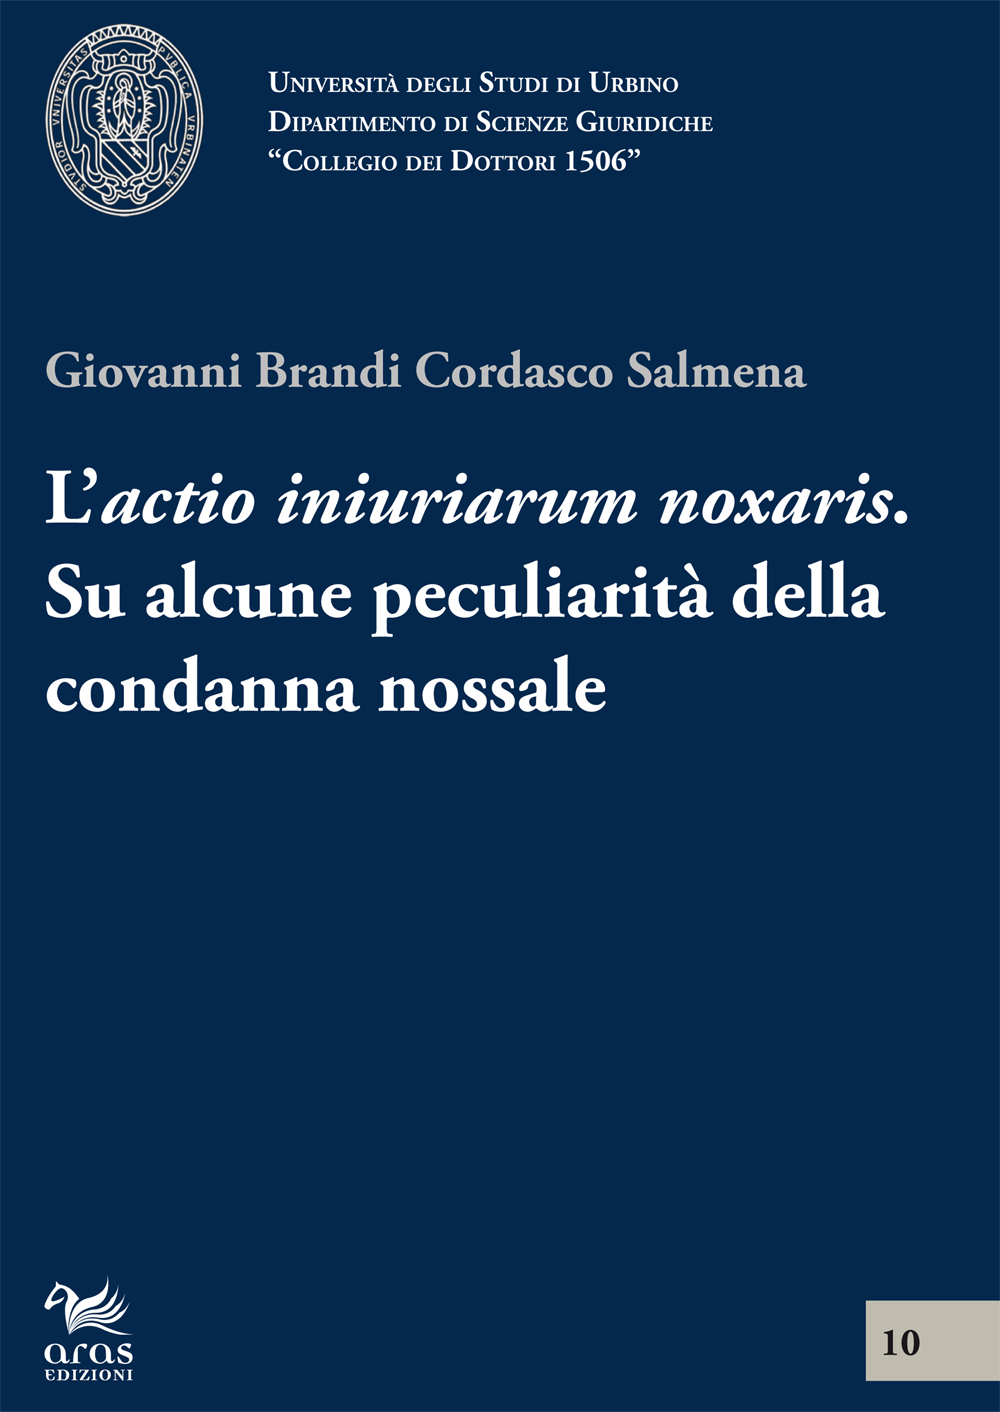 E-book, L'actio inuriarium noxalis : su alcune peculiarità della condanna nossale, Aras